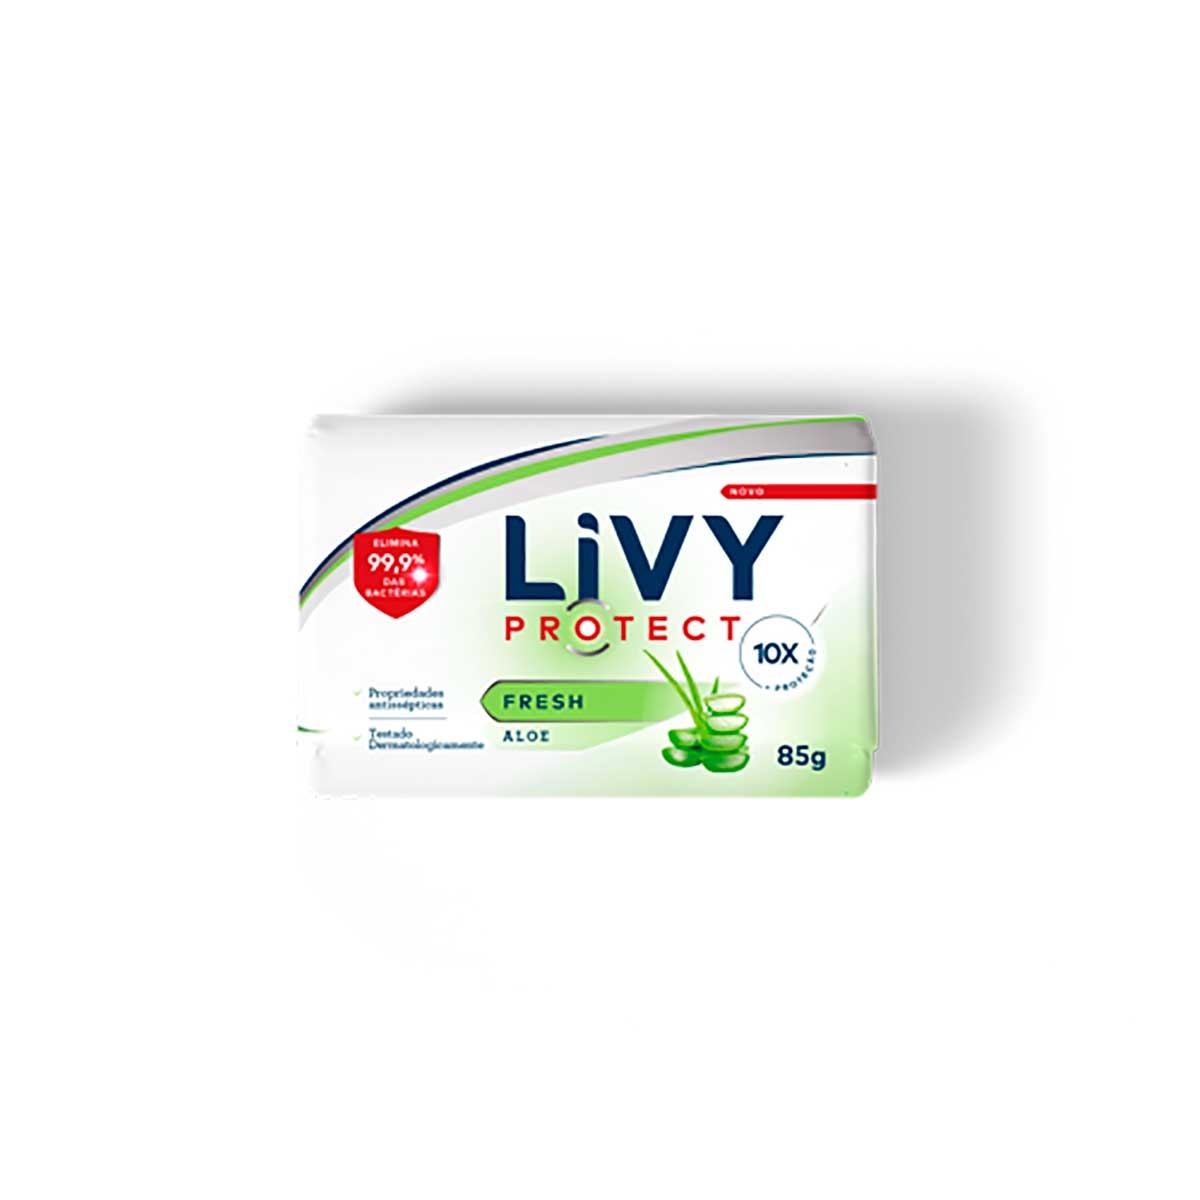 Sabonete em Barra Livy Protect Antibac Aloe Vera com 85g Livina 85g